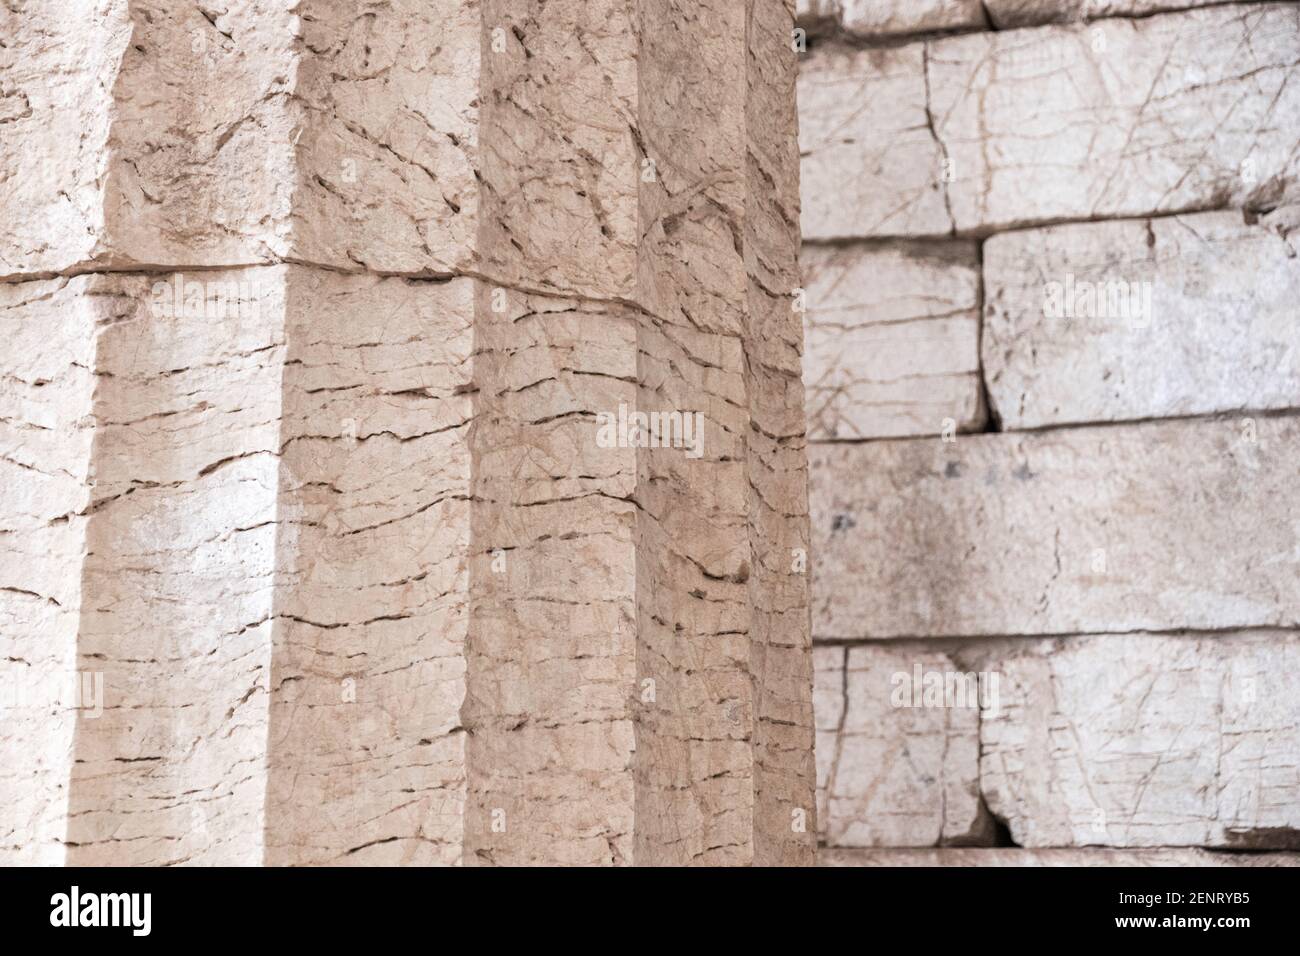 Bassae, Grèce. De grandes colonnes en ruines du temple d'Apollon Epikourios à l'intérieur d'une tente Banque D'Images